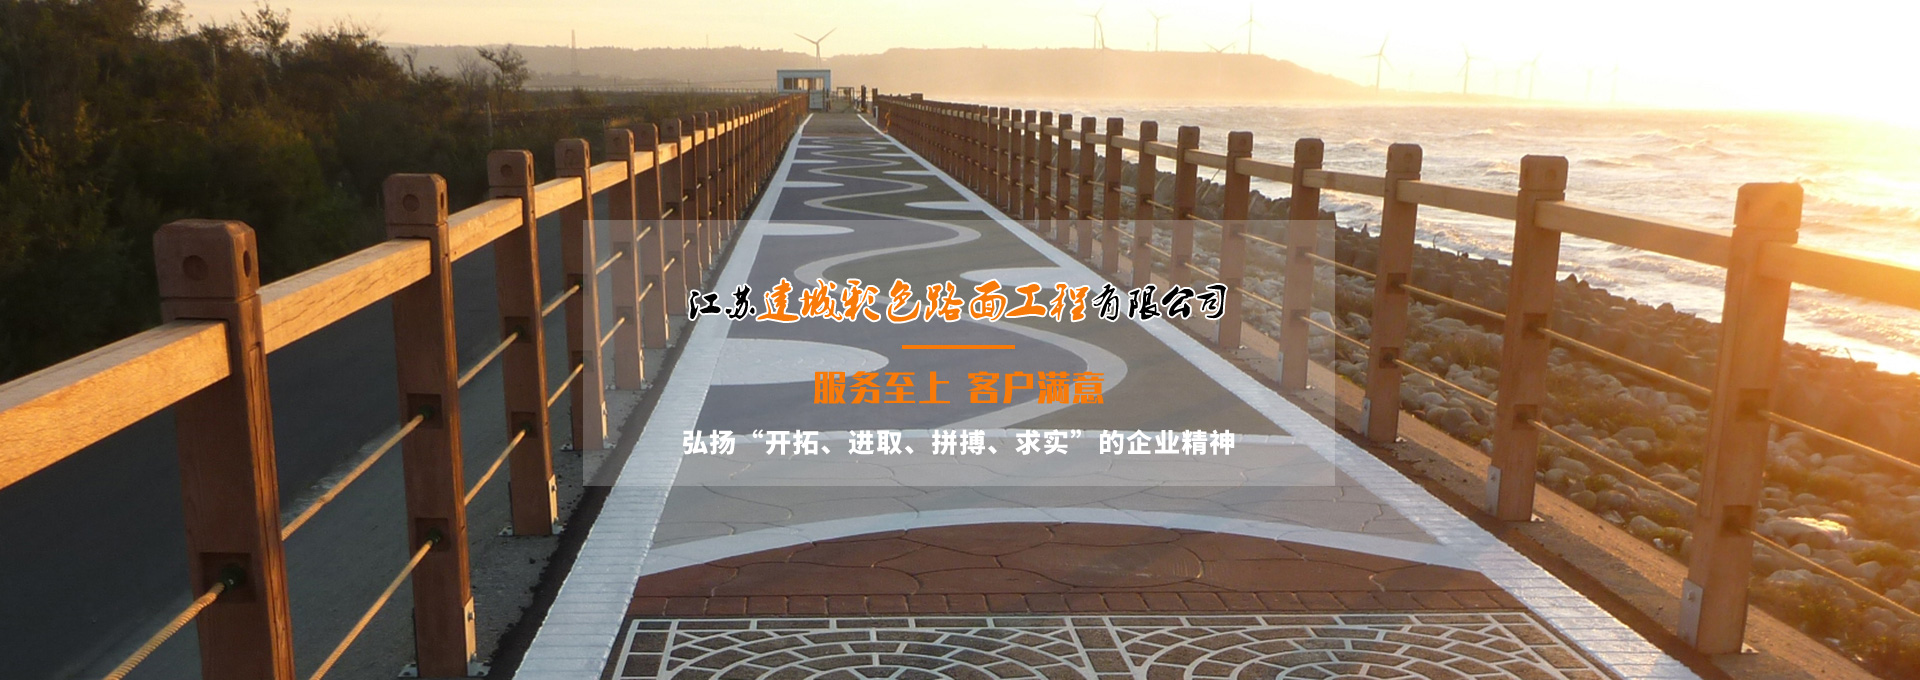 南京沥青路面,南京沥青施工,南京彩色路面